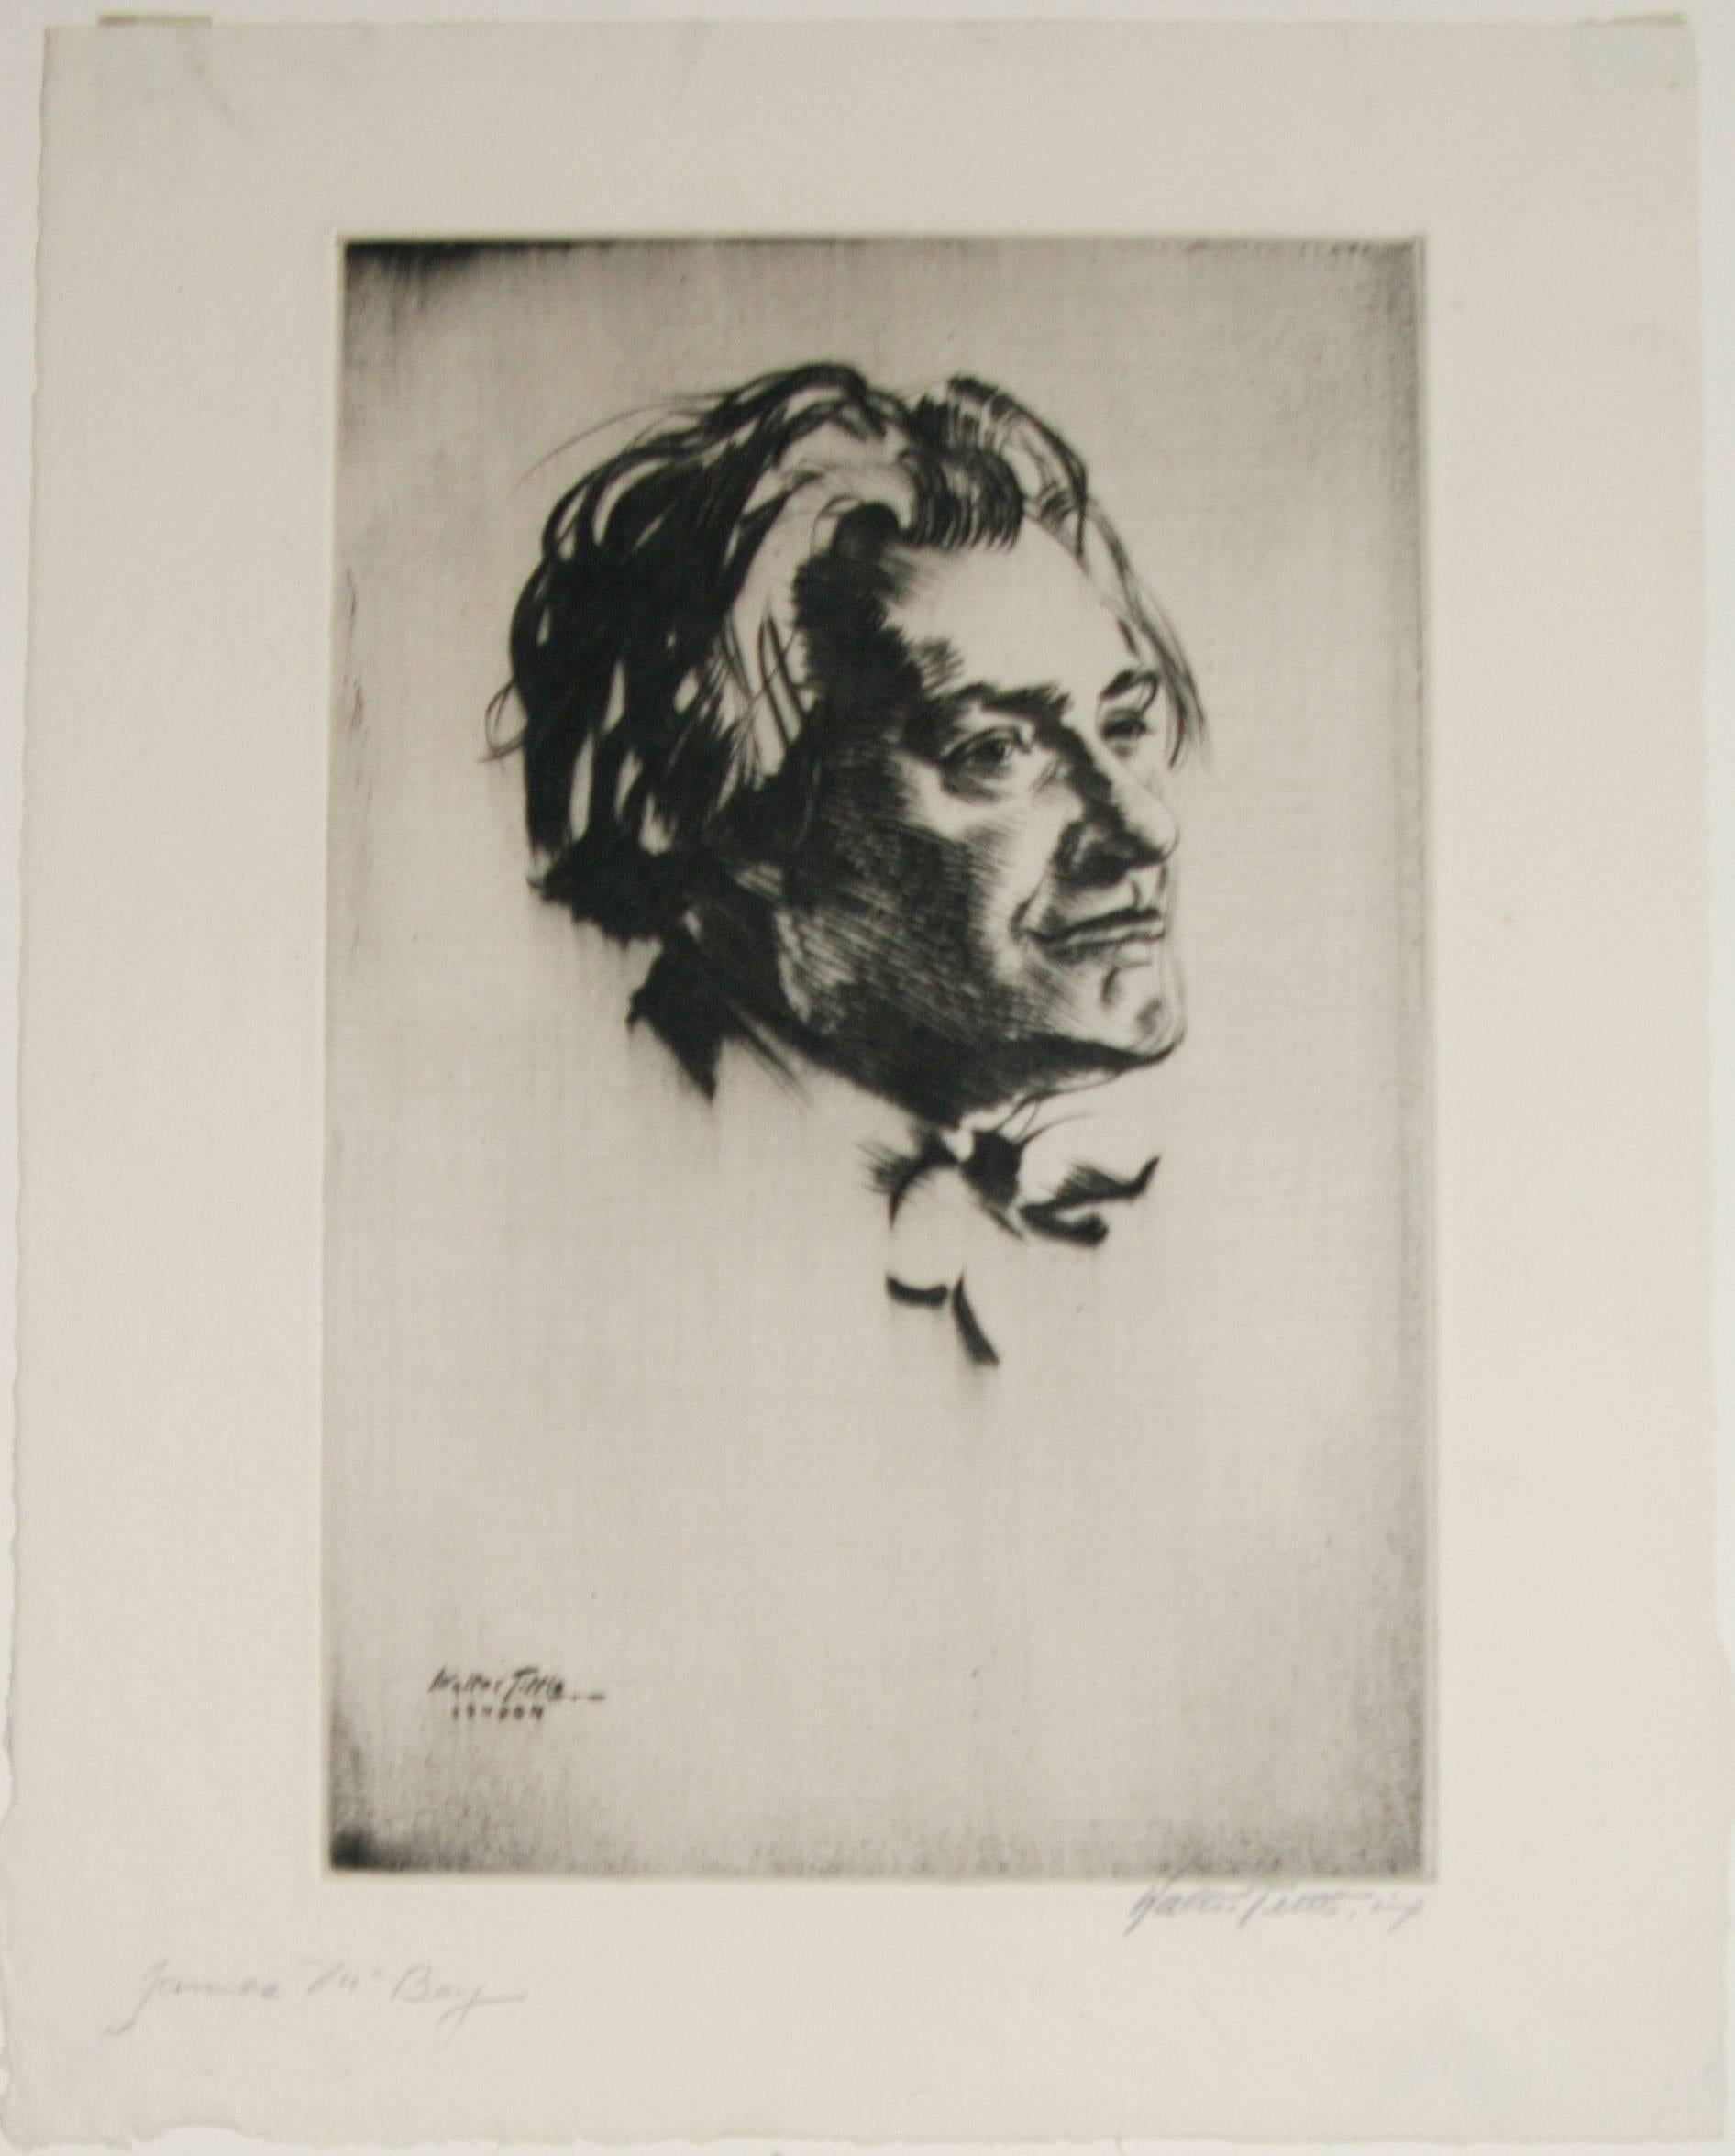 Porträt von James McBey. (Braun), Figurative Print, von Walter Tittle